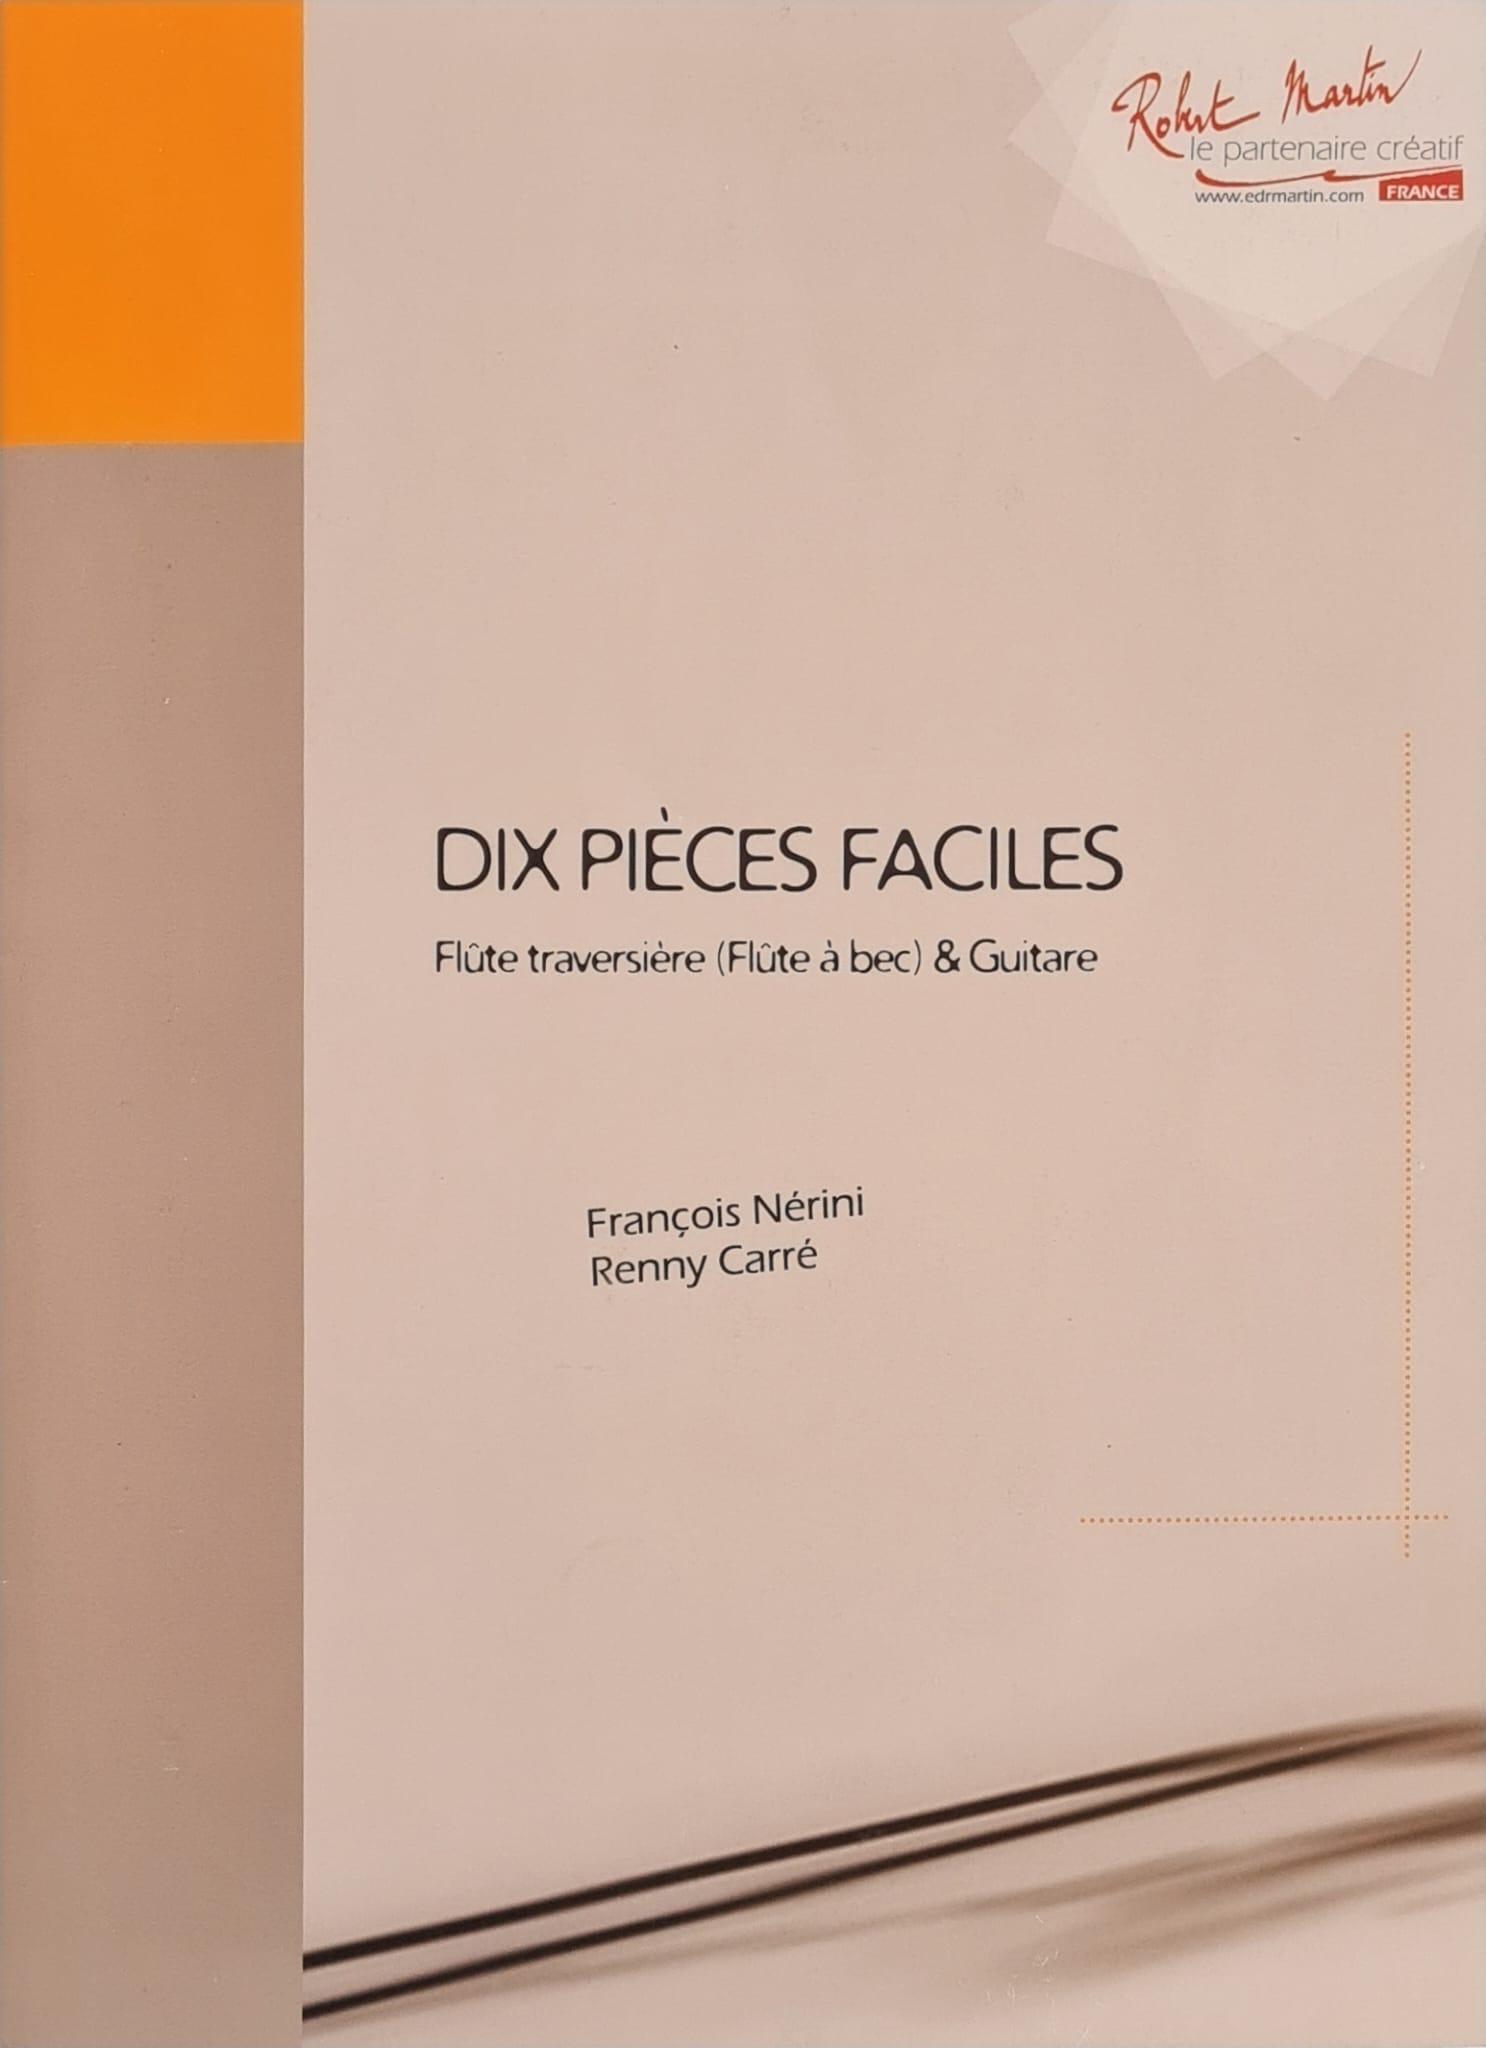 DIX Pieces Faciles Pour Flute et Guitare - François Nerini | Suono Flauti